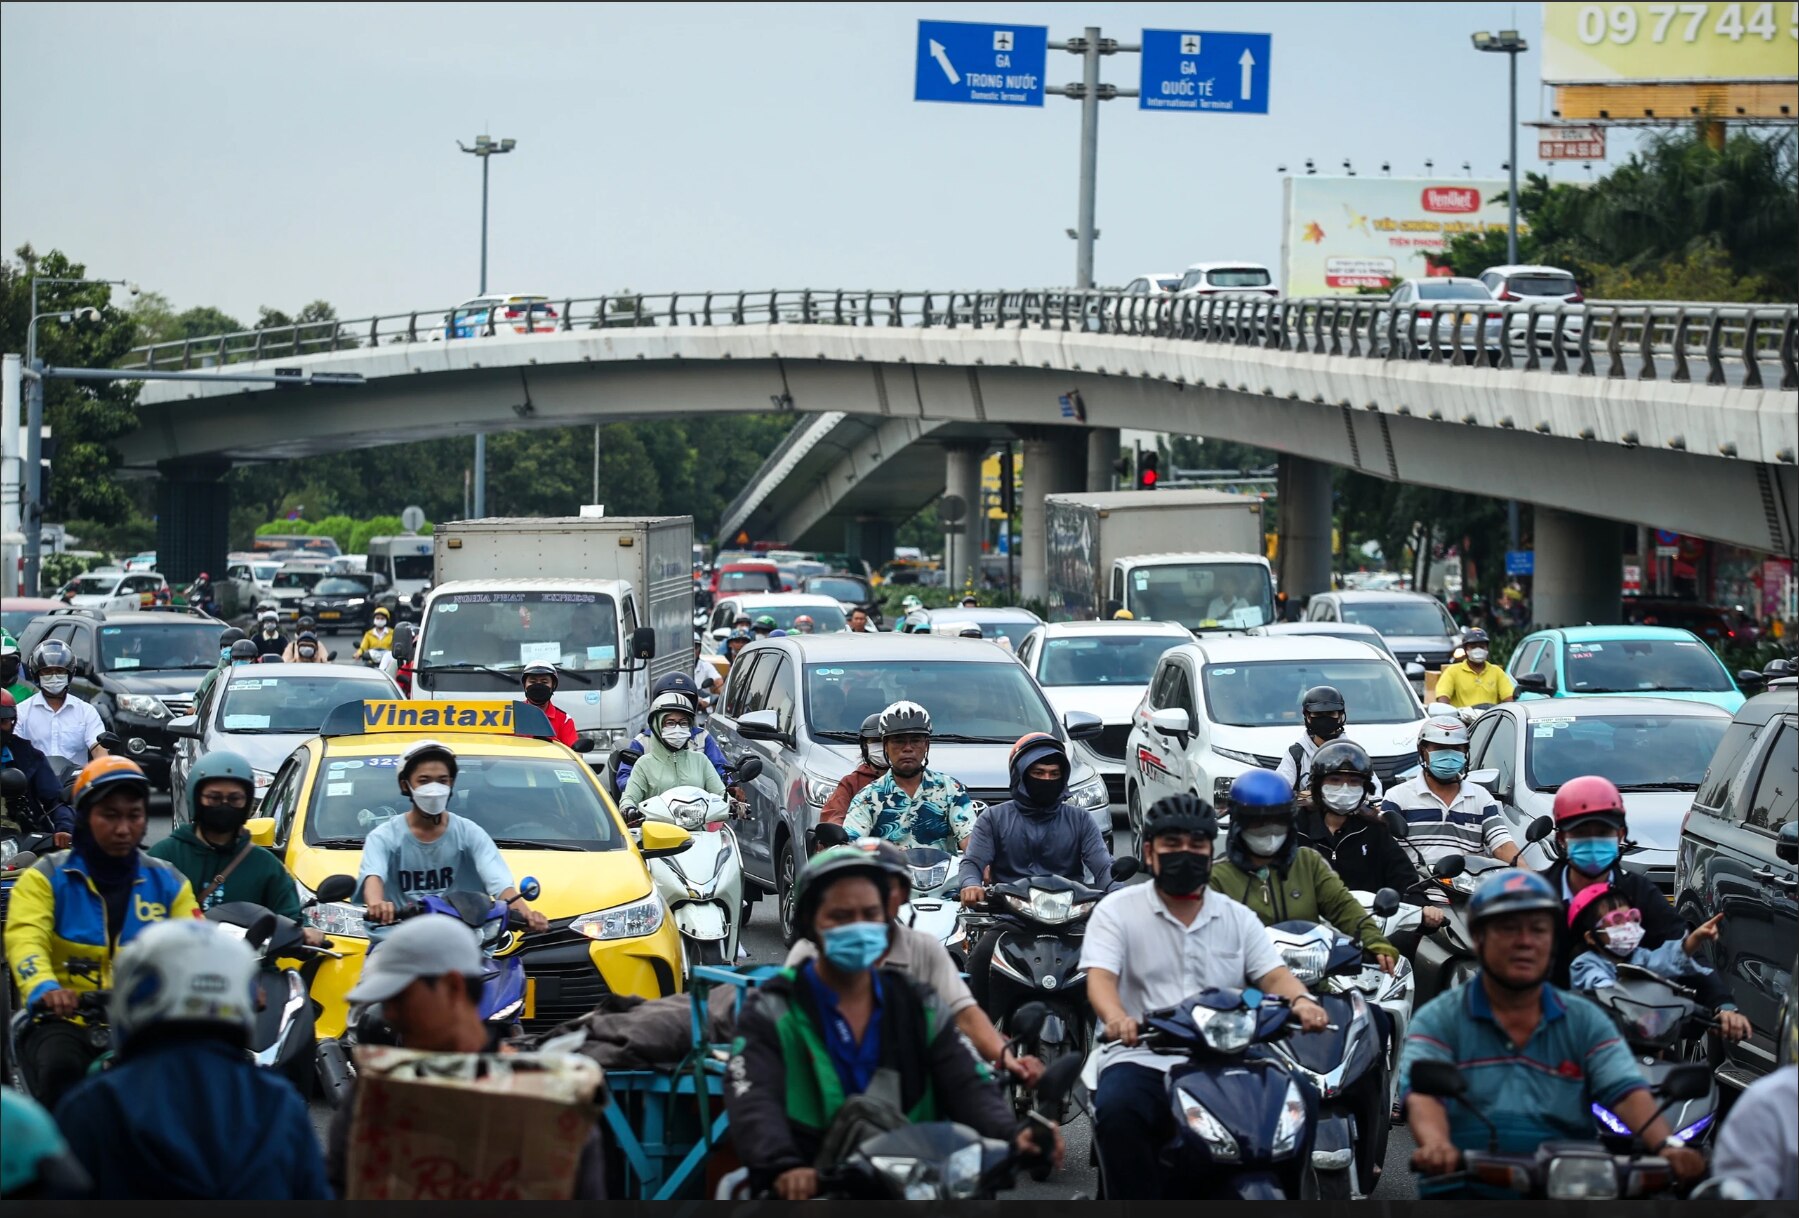  Chi phí tăng gấp 3 nếu cấm xe tải 3 đường cửa ngõ Tân Sơn Nhất- Ảnh 1.